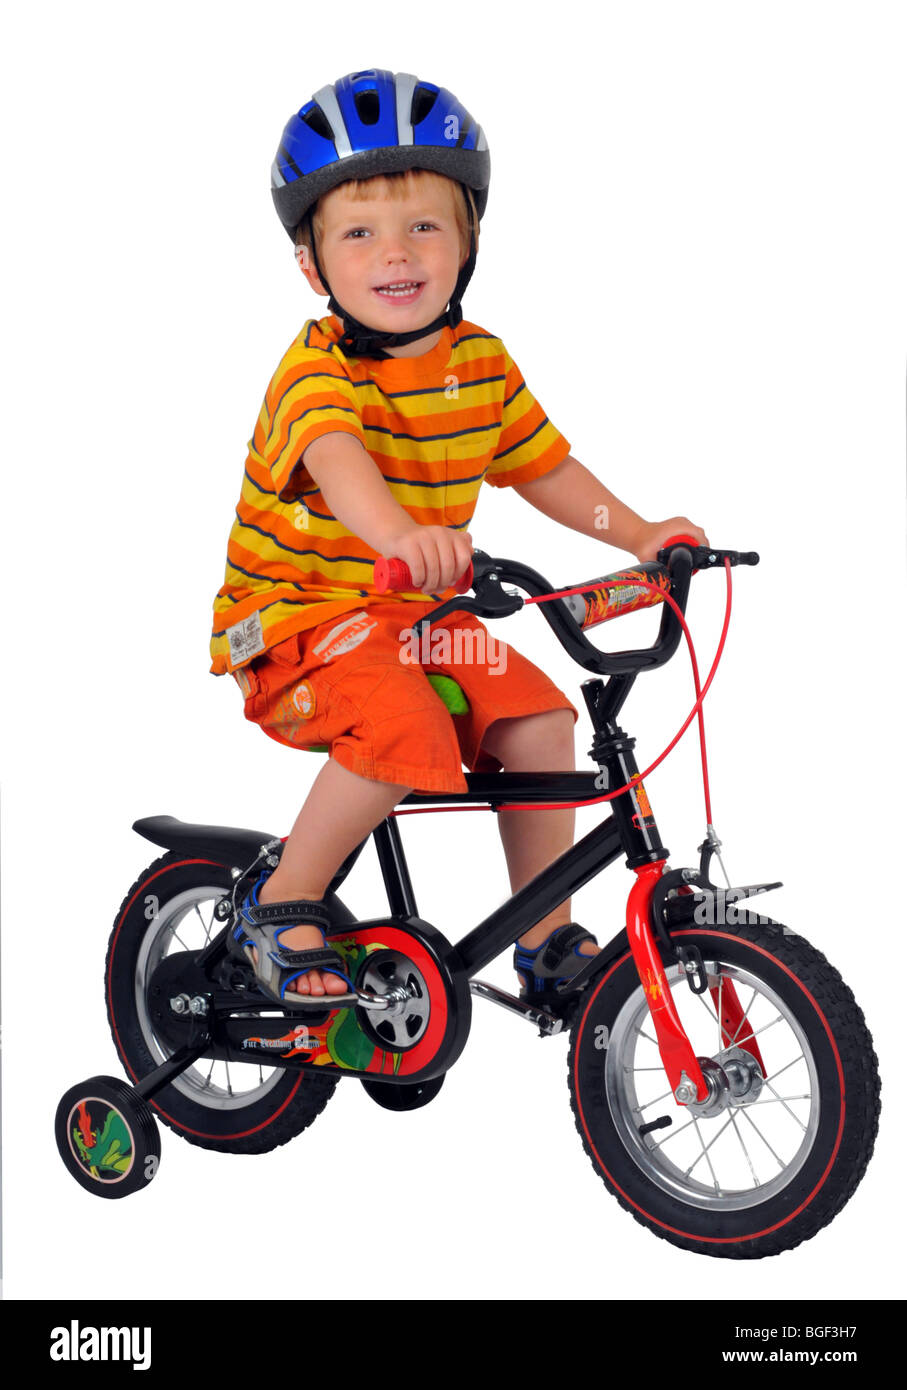 Junge auf einem Fahrrad mit Stabilisatoren, Fahrrad mit Stabilisator, Kind, mit dem Fahrrad mit Stabilisatoren, lernen lernen, Zyklus Stockfoto